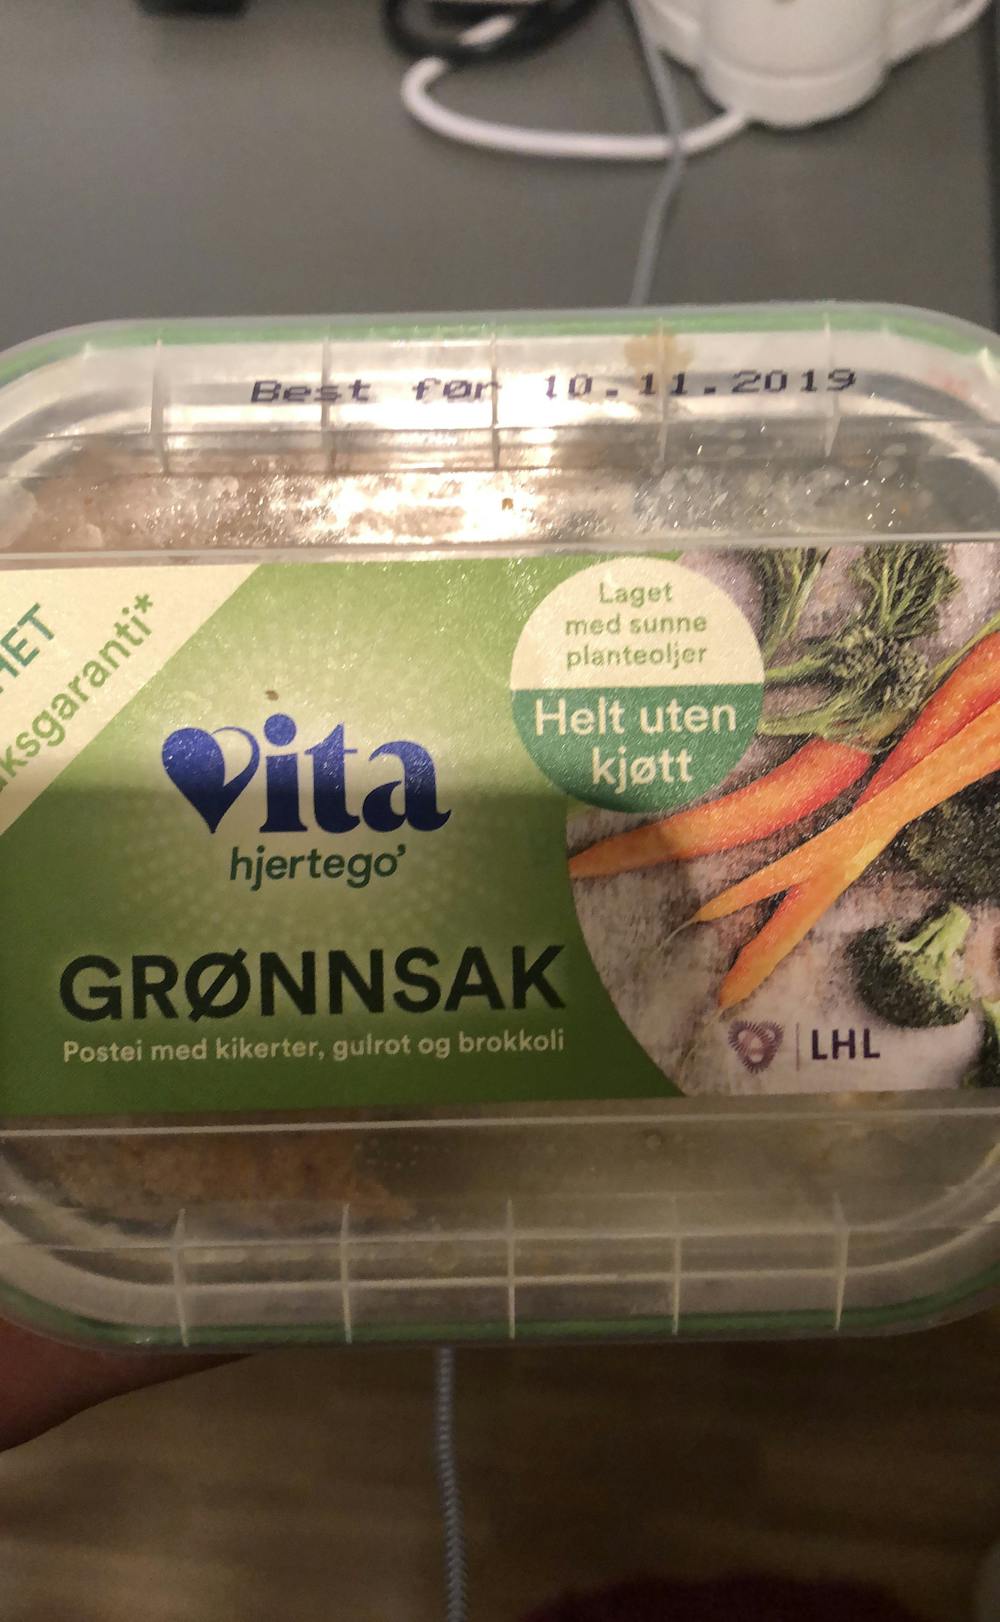 Grønnsakspostei, Vita hjertego'